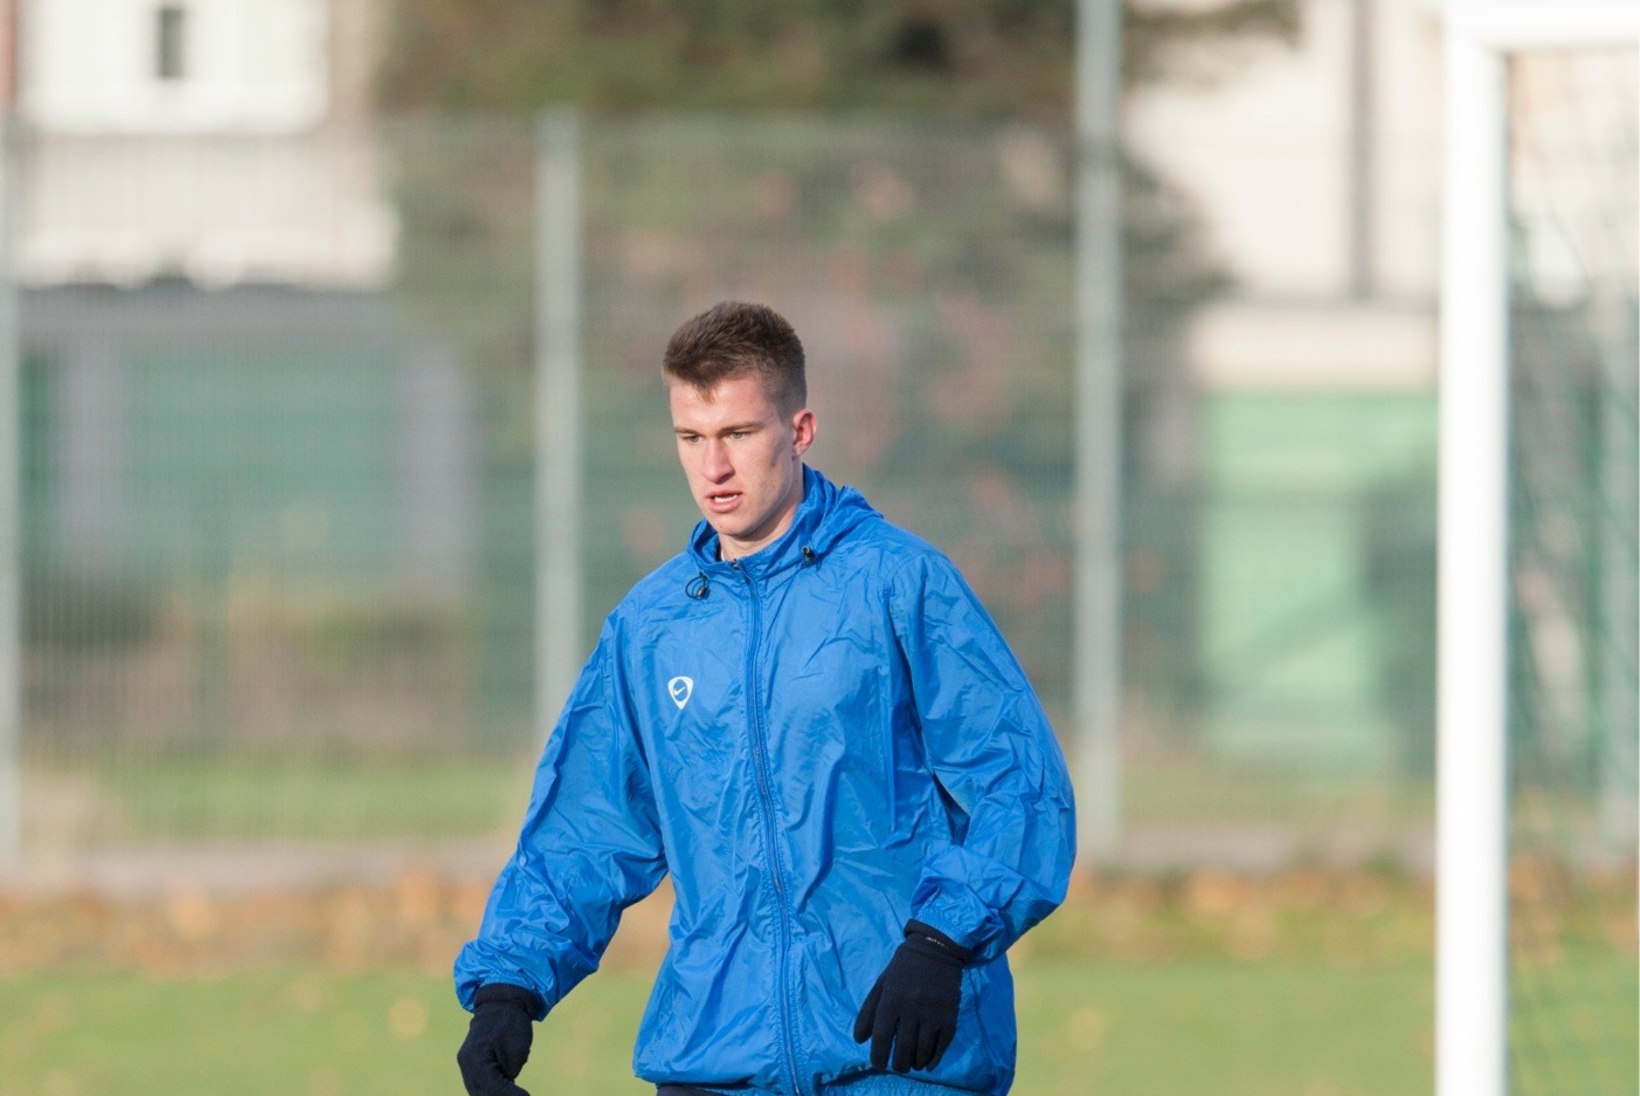 17aastane Mattias Käit tähistas koondisekutset väravaga Inglismaal!